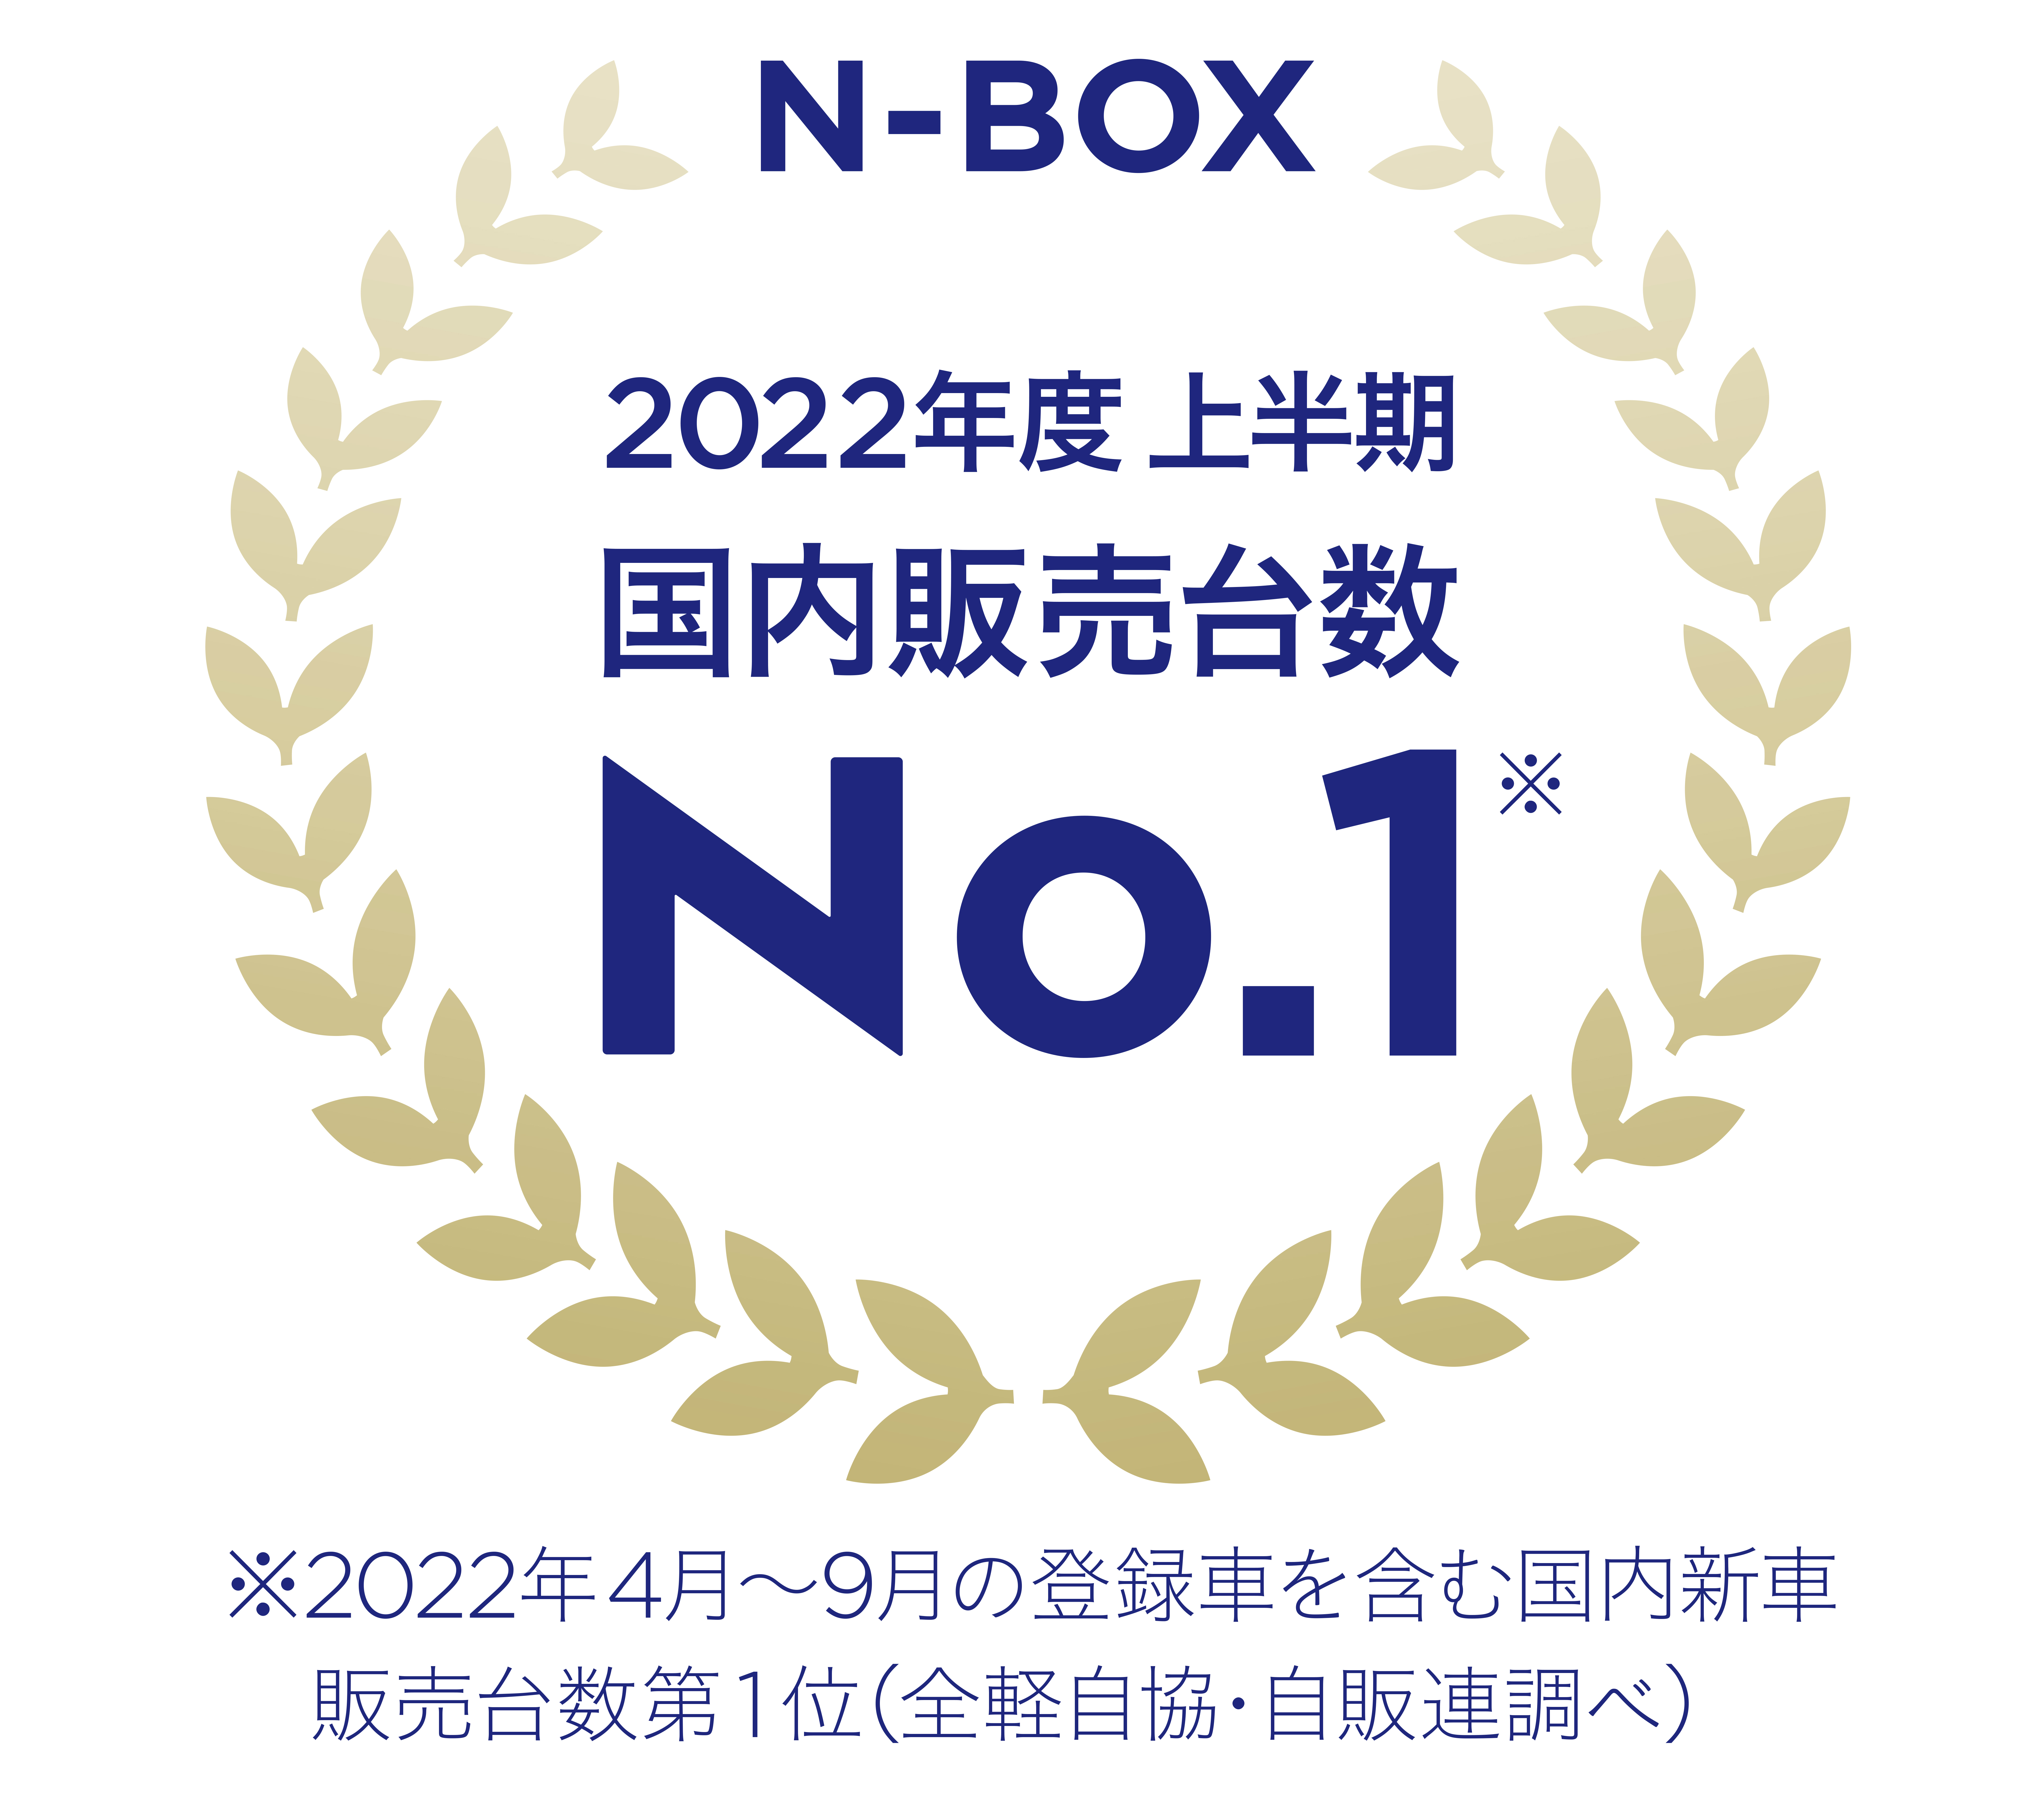 NBOX2022kamikiNo1